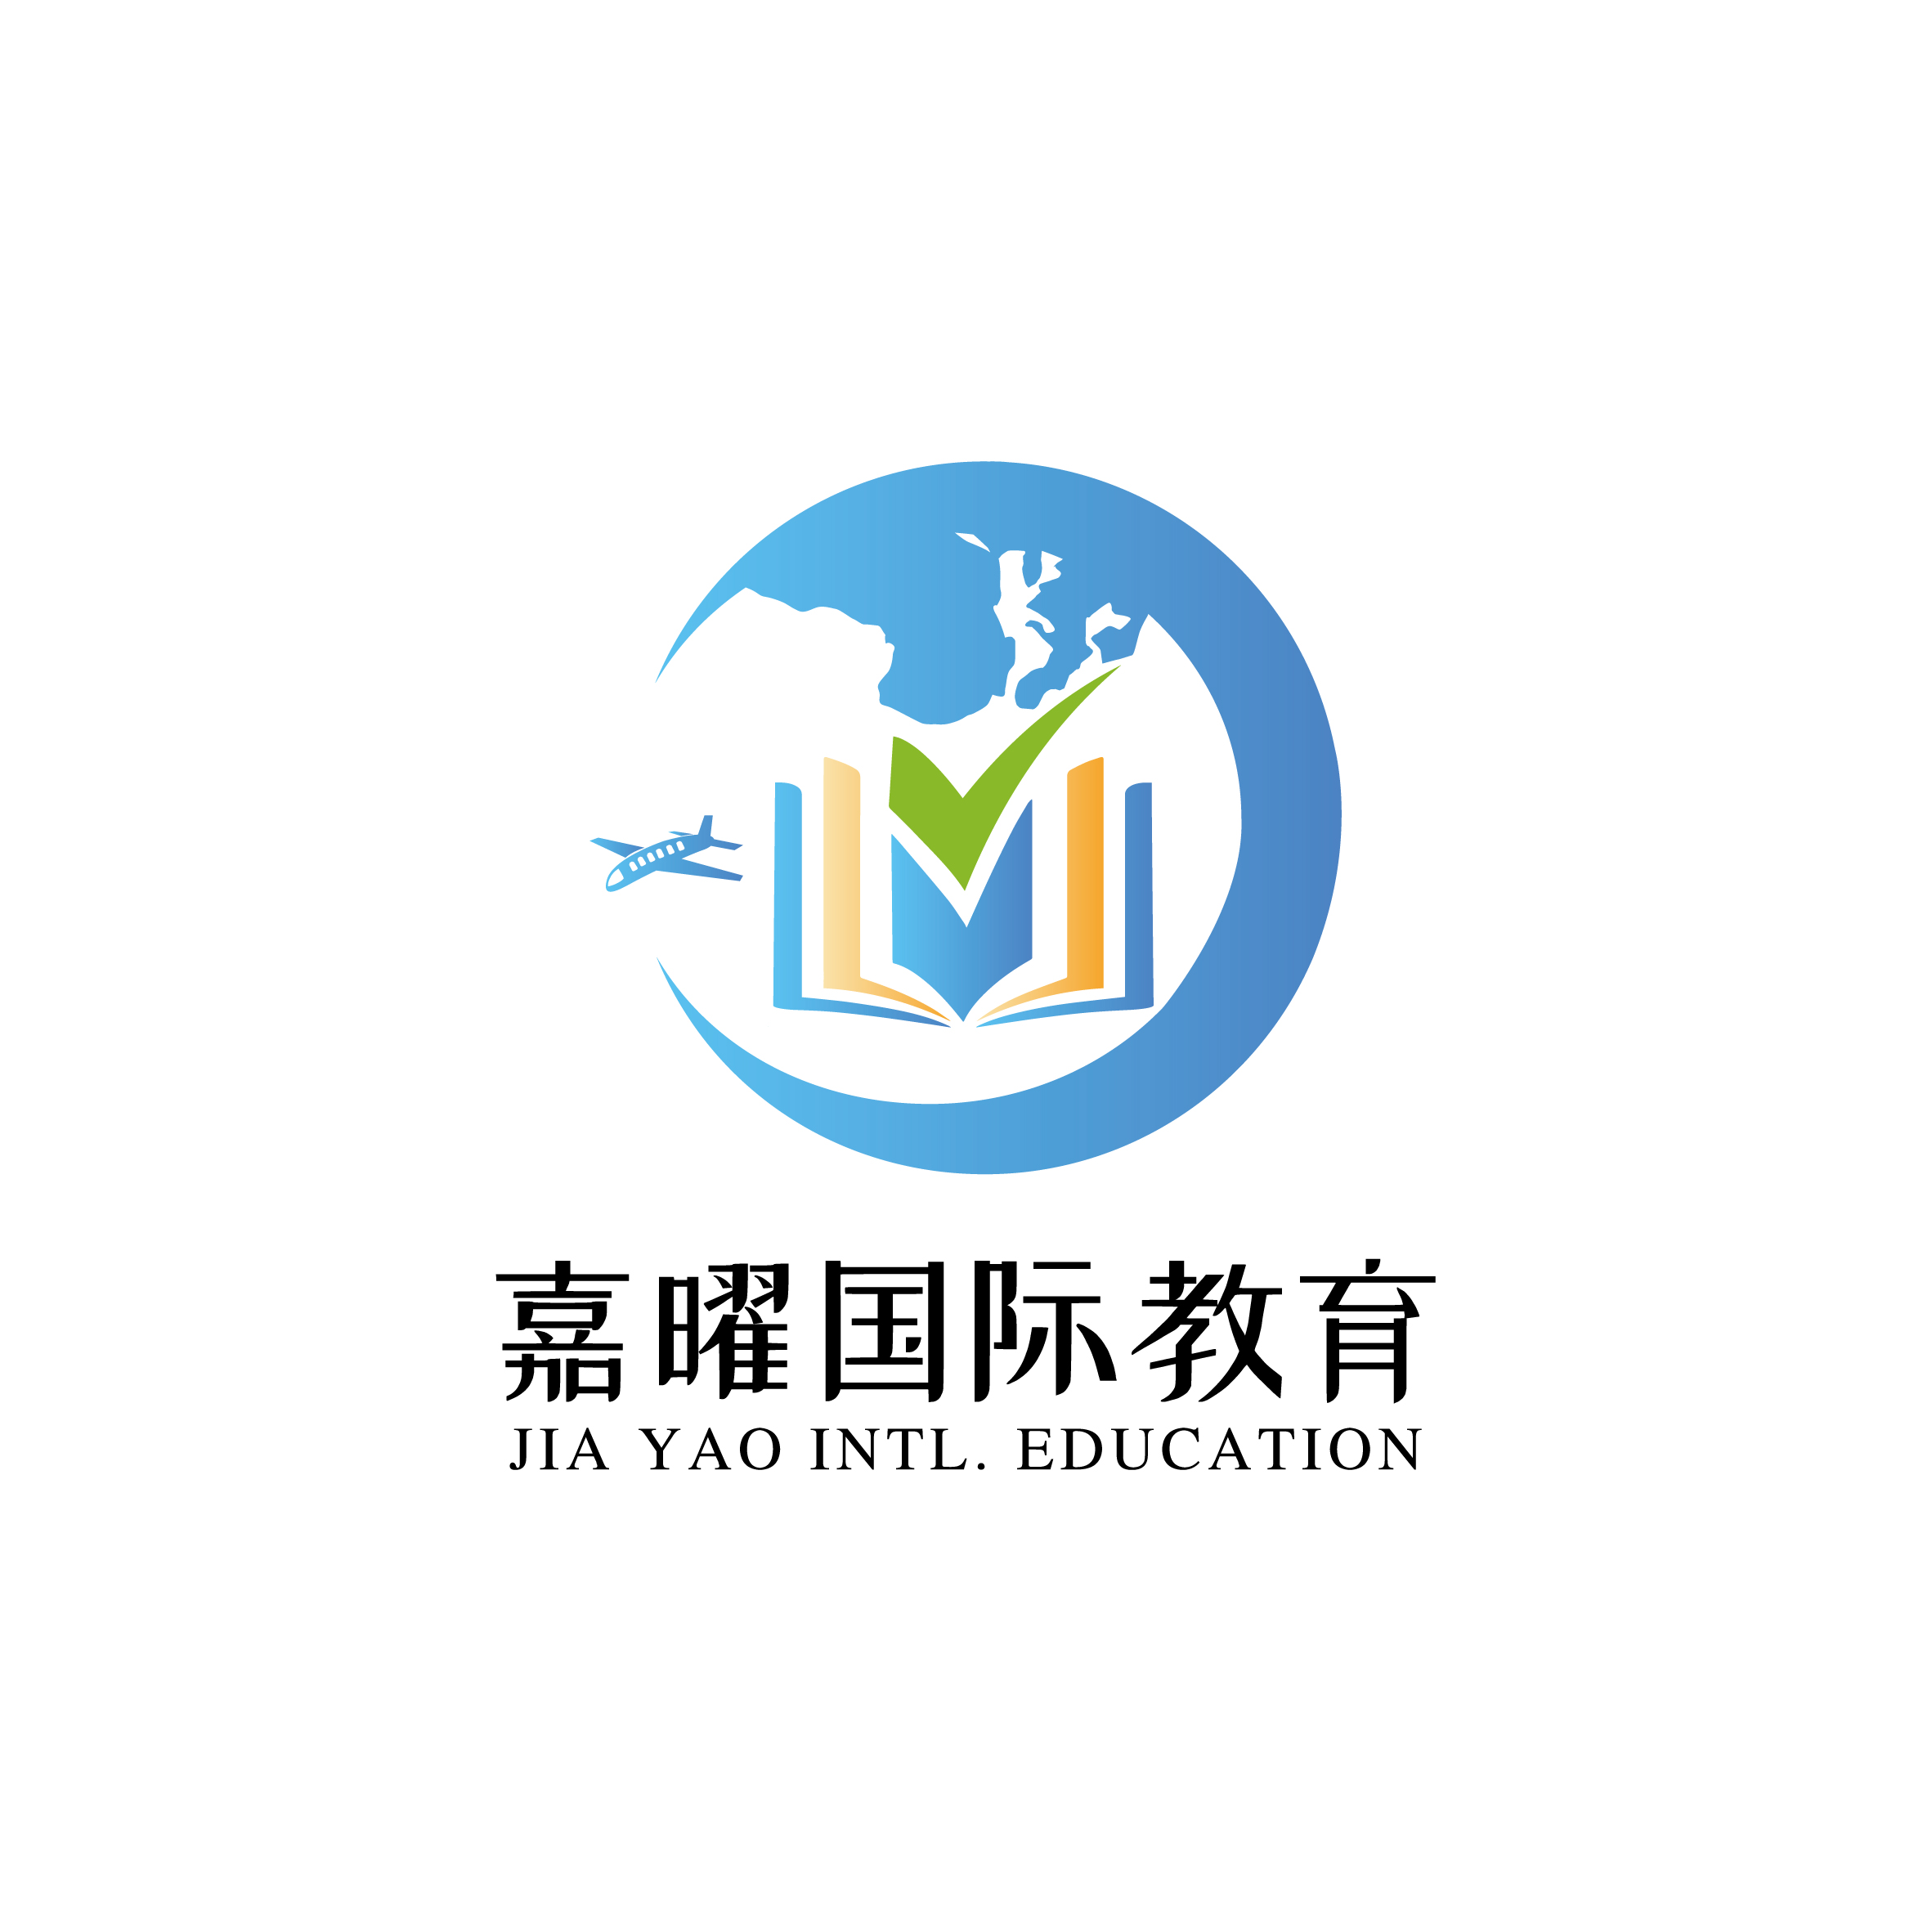 北京嘉曜国际教育咨询有限公司